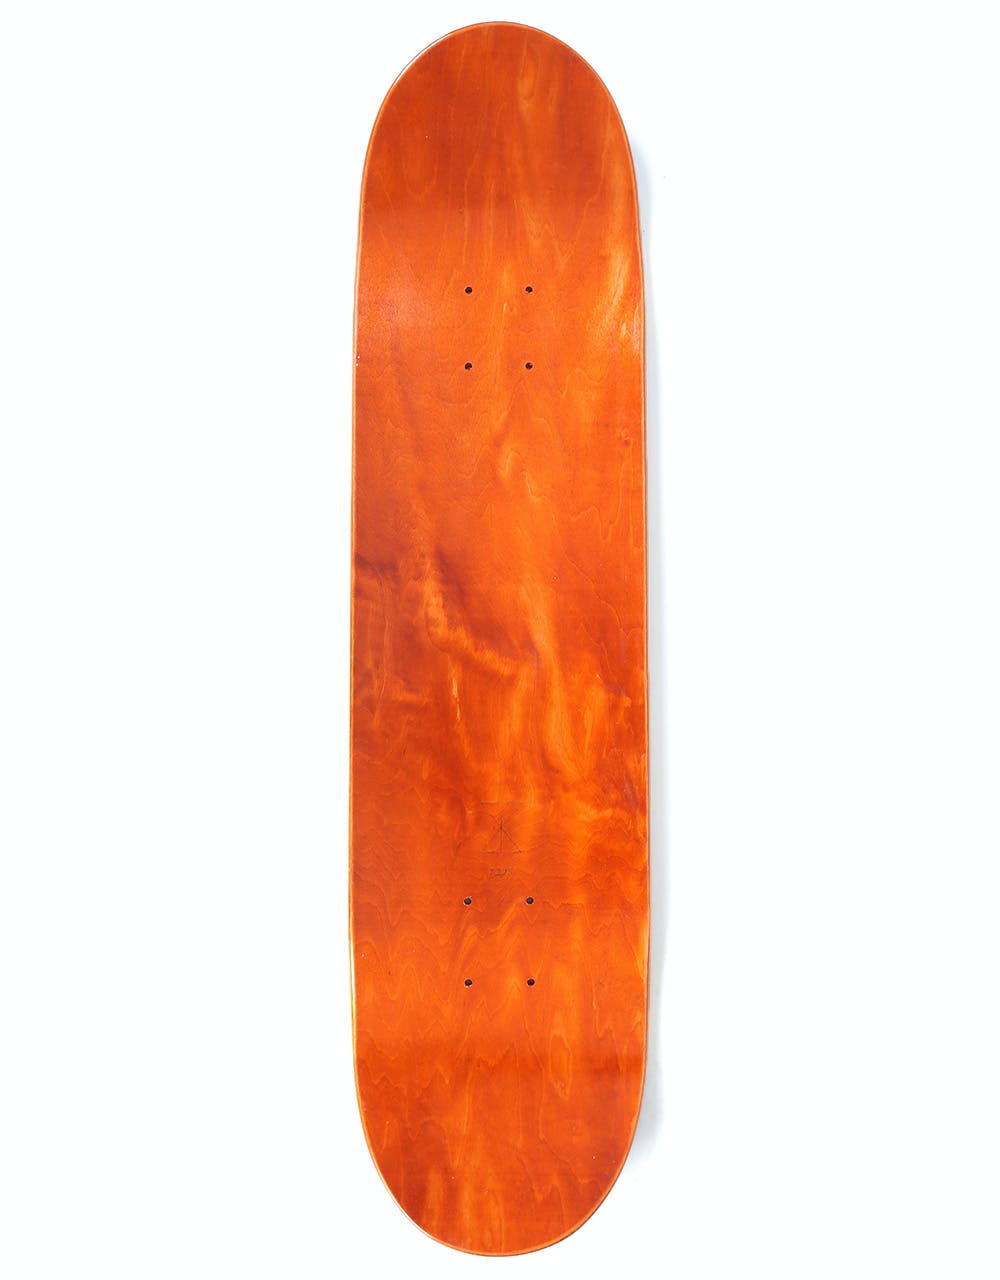 Sour Josef Packman Skateboard Deck - 7.8"